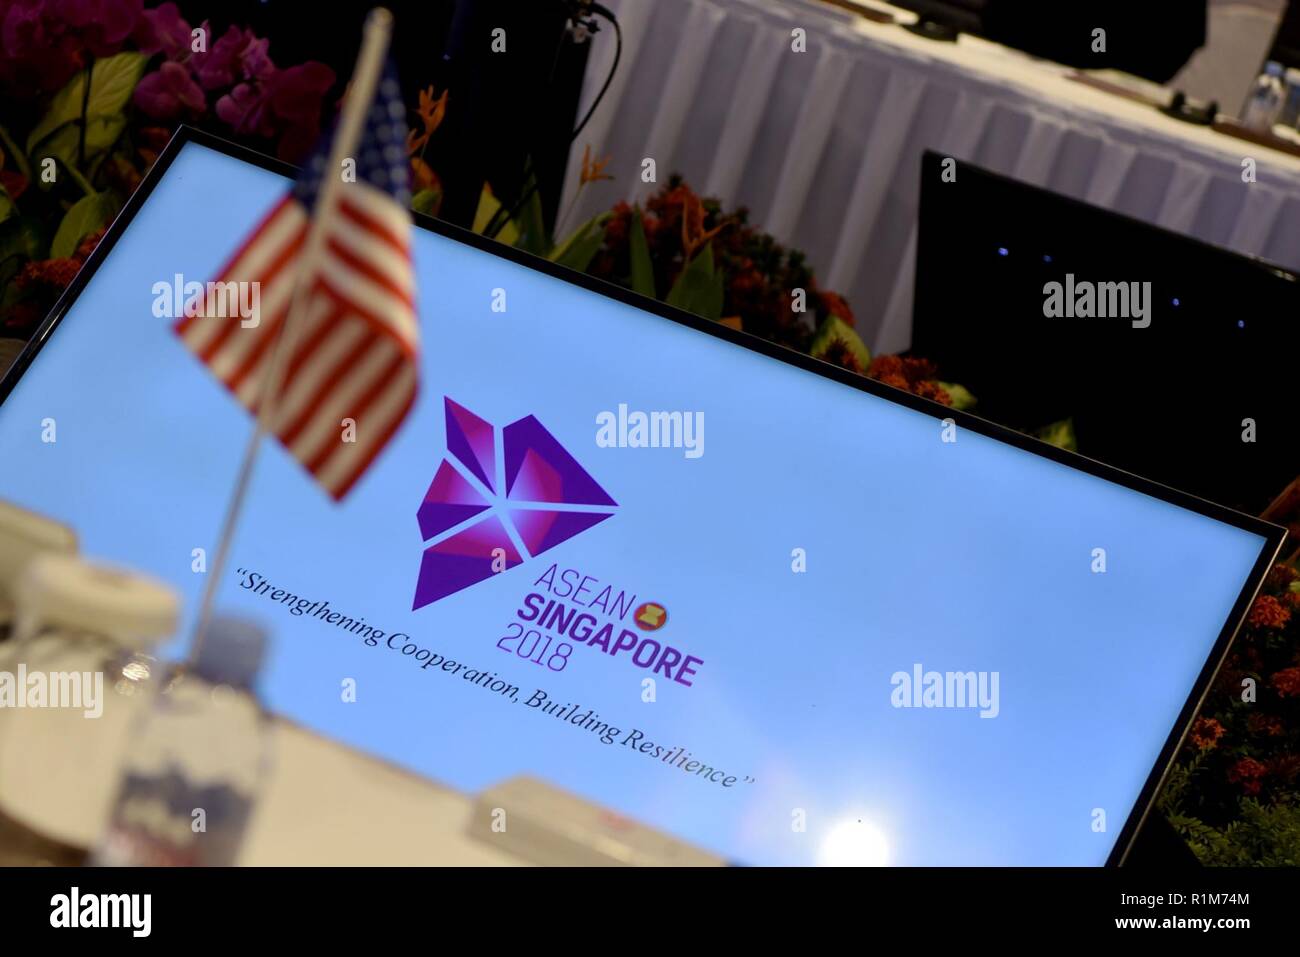 Stati Uniti Il Segretario della Difesa James N. Mattis assiste l'ASEAN dei ministri della Difesa Meeting-Plus in Singapore, Ottobre 19, 2018. Foto Stock